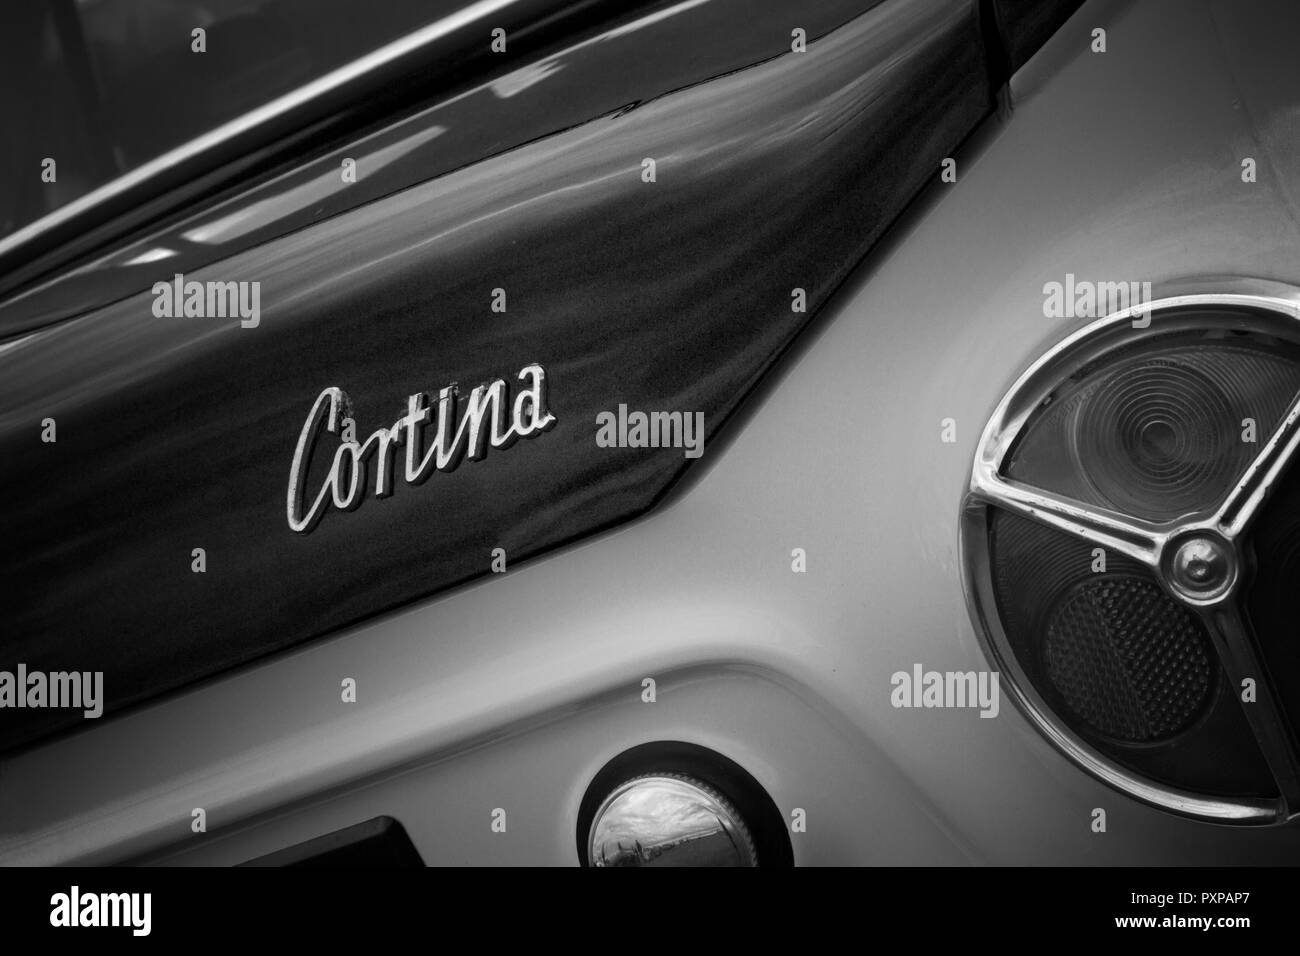 FORD CORTINA BADGE Cortina cortina mk1 badge.Ford Cortina 